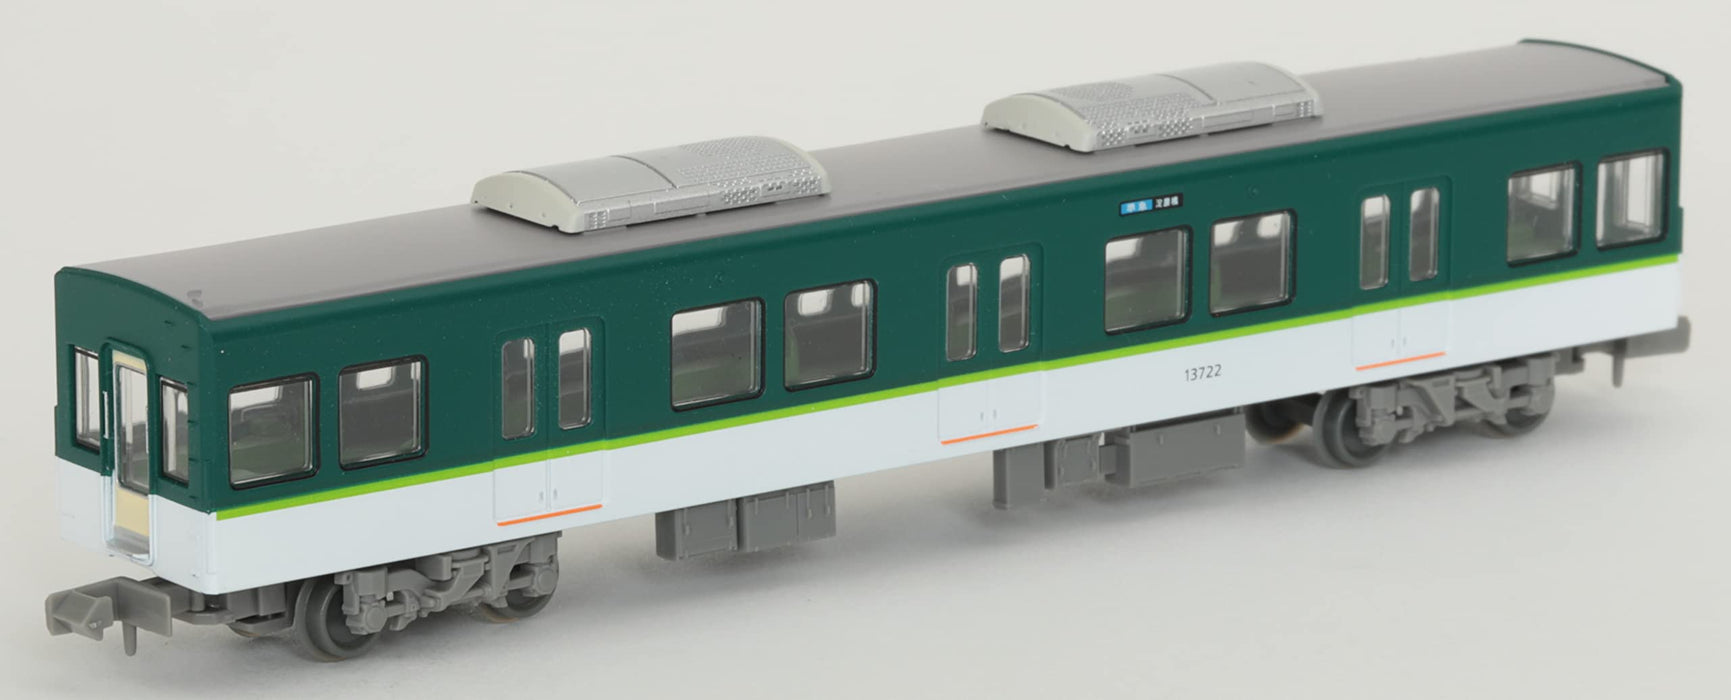 Tomytec Japan Railway Collection Keihan Electric Railway Serie 13000 7-Wagen-Set Dioramazubehör (1. Bestellung, limitierte Auflage) 318309